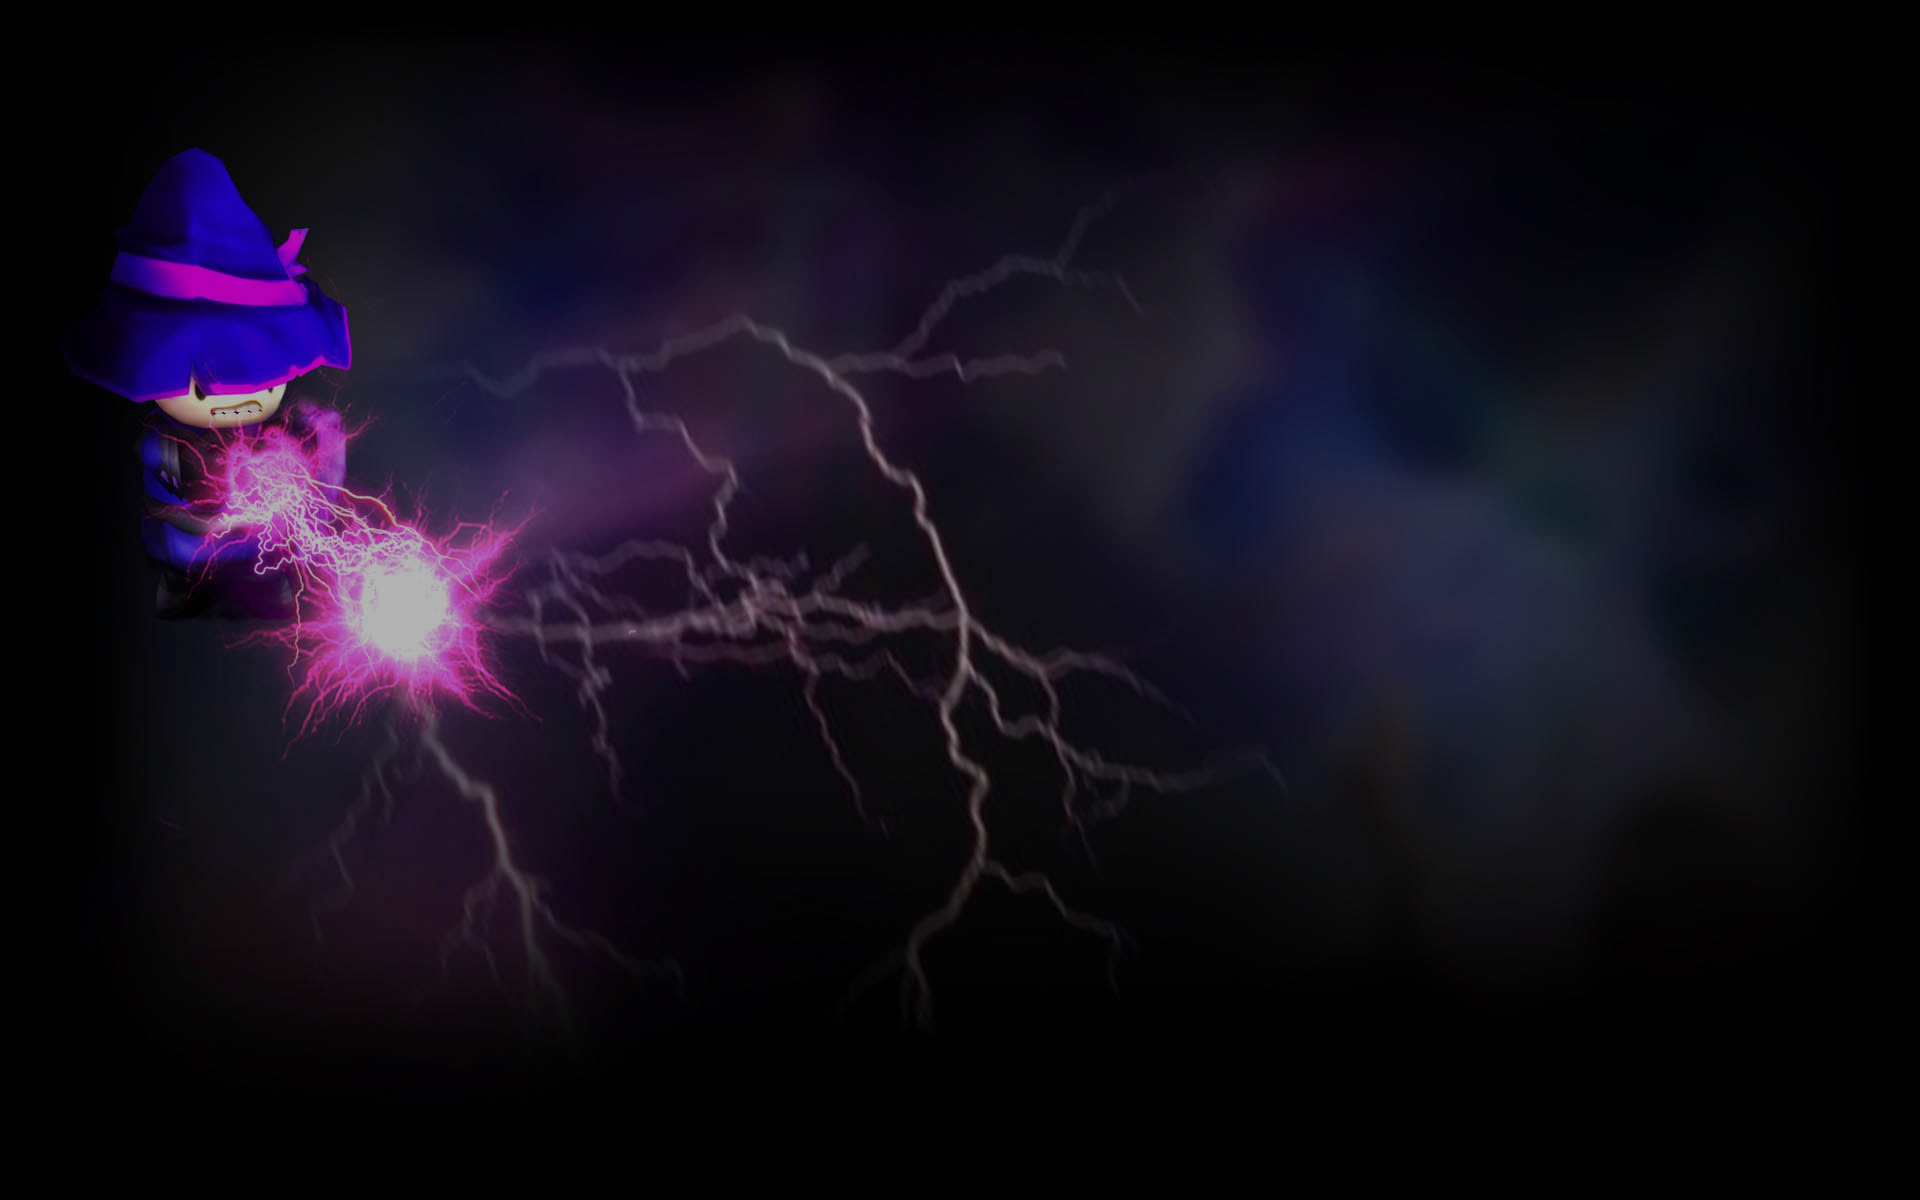 Lightning: Màn trình diễn của ánh sáng điện khiến cho mọi người đều thích thú và sợ hãi cùng lúc. Bộ ảnh về Lightning sẽ cho bạn những hình ảnh ấn tượng nhất về những cơn giông tố và sấm chớp rực rỡ nhất, cùng với âm nhạc sống động để tăng thêm cảm xúc.